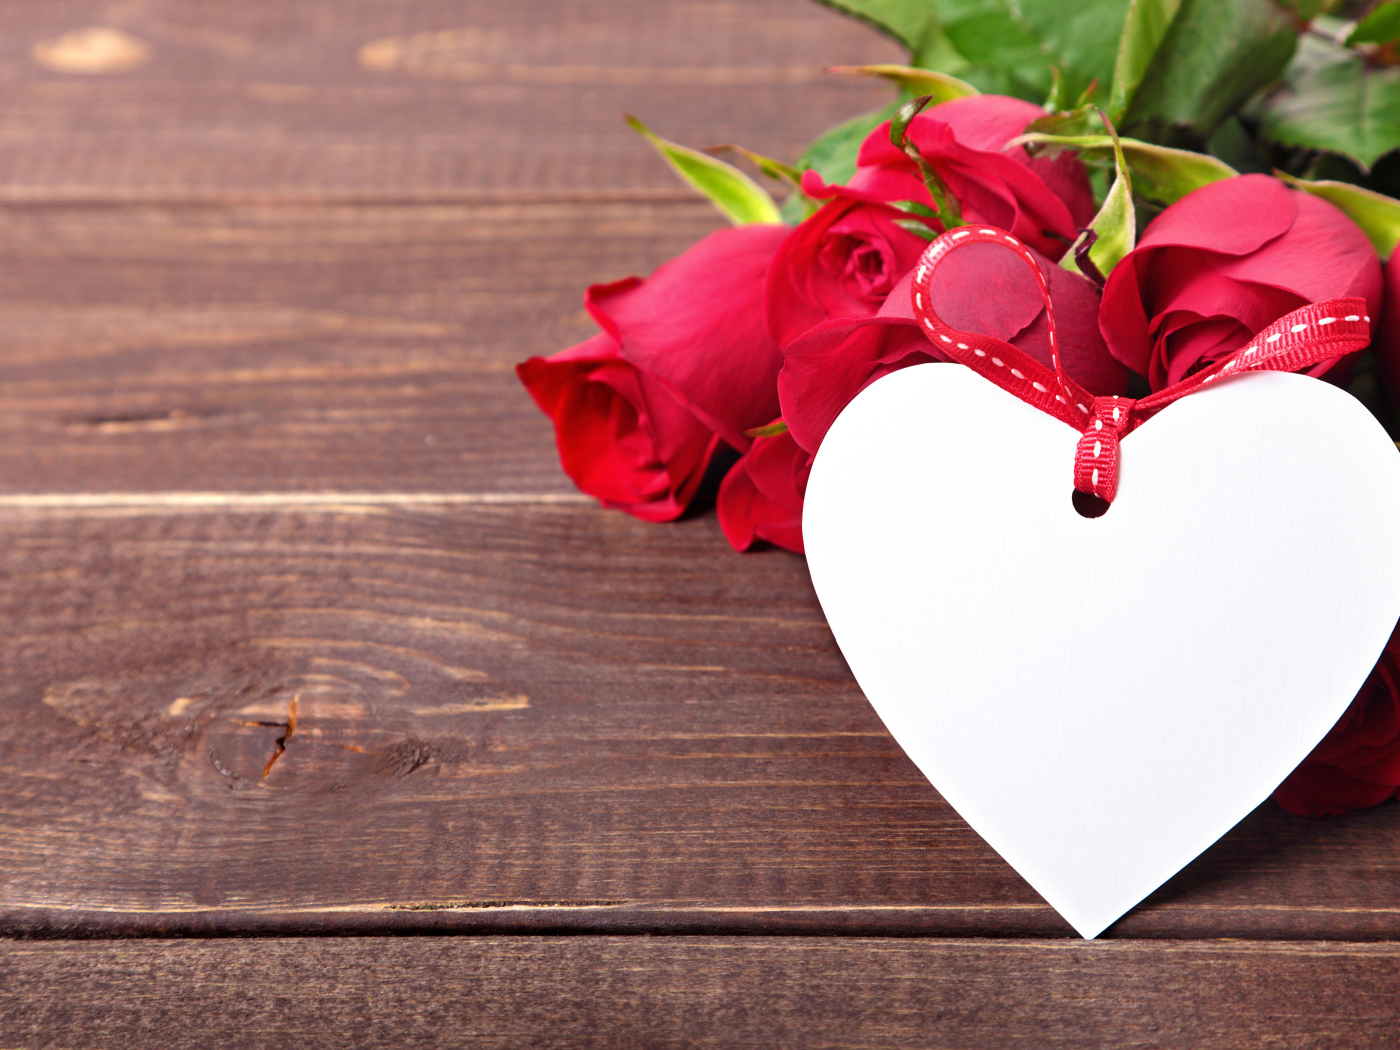 Букет розовых роз с бумажным сердцем на деревянном фоне